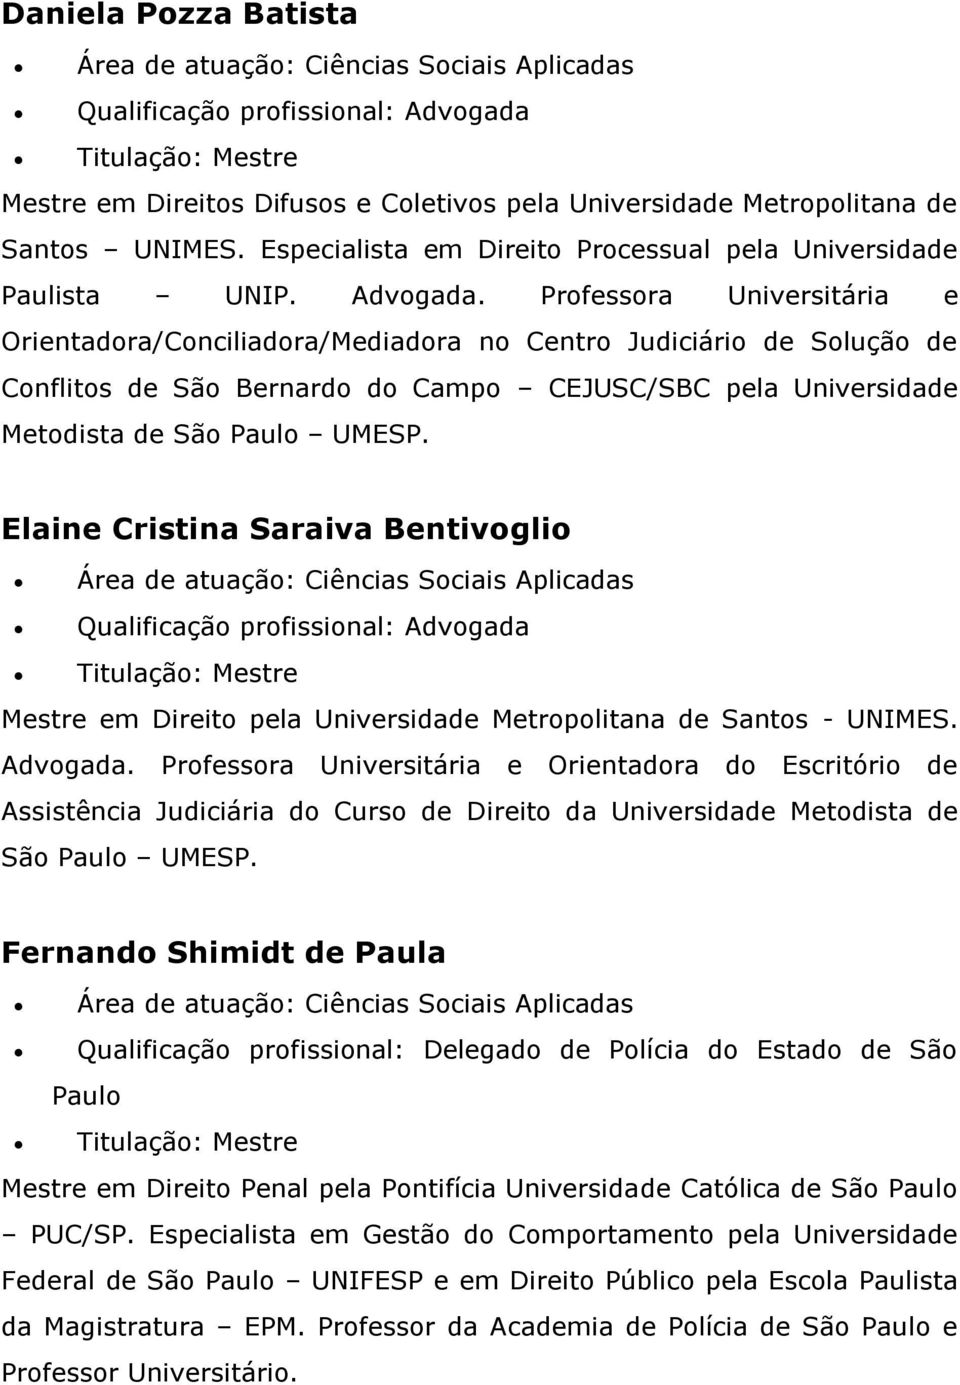 Elaine Cristina Saraiva Bentivoglio Mestre em Direito pela Universidade Metropolitana de Santos - UNIMES. Advogada.